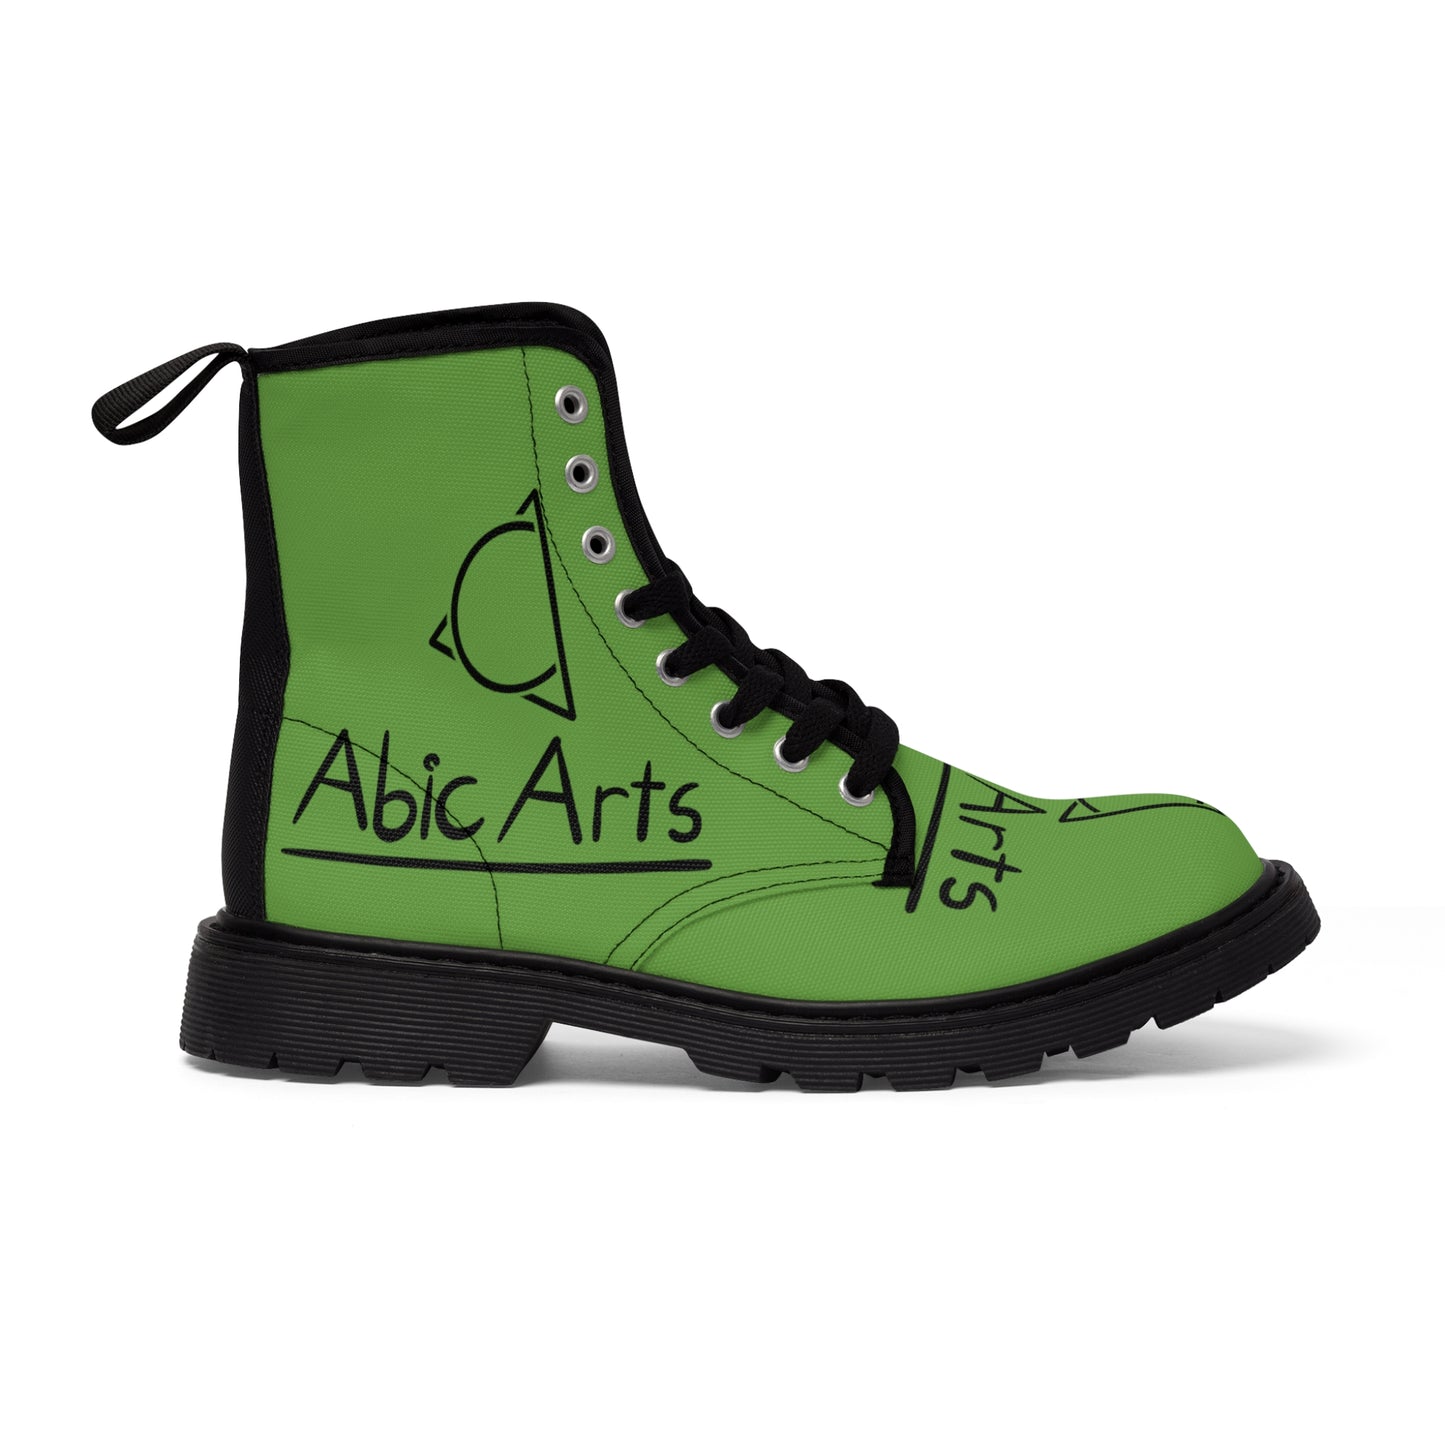 Men's Canvas Boots  "Abic Arts 2.0"